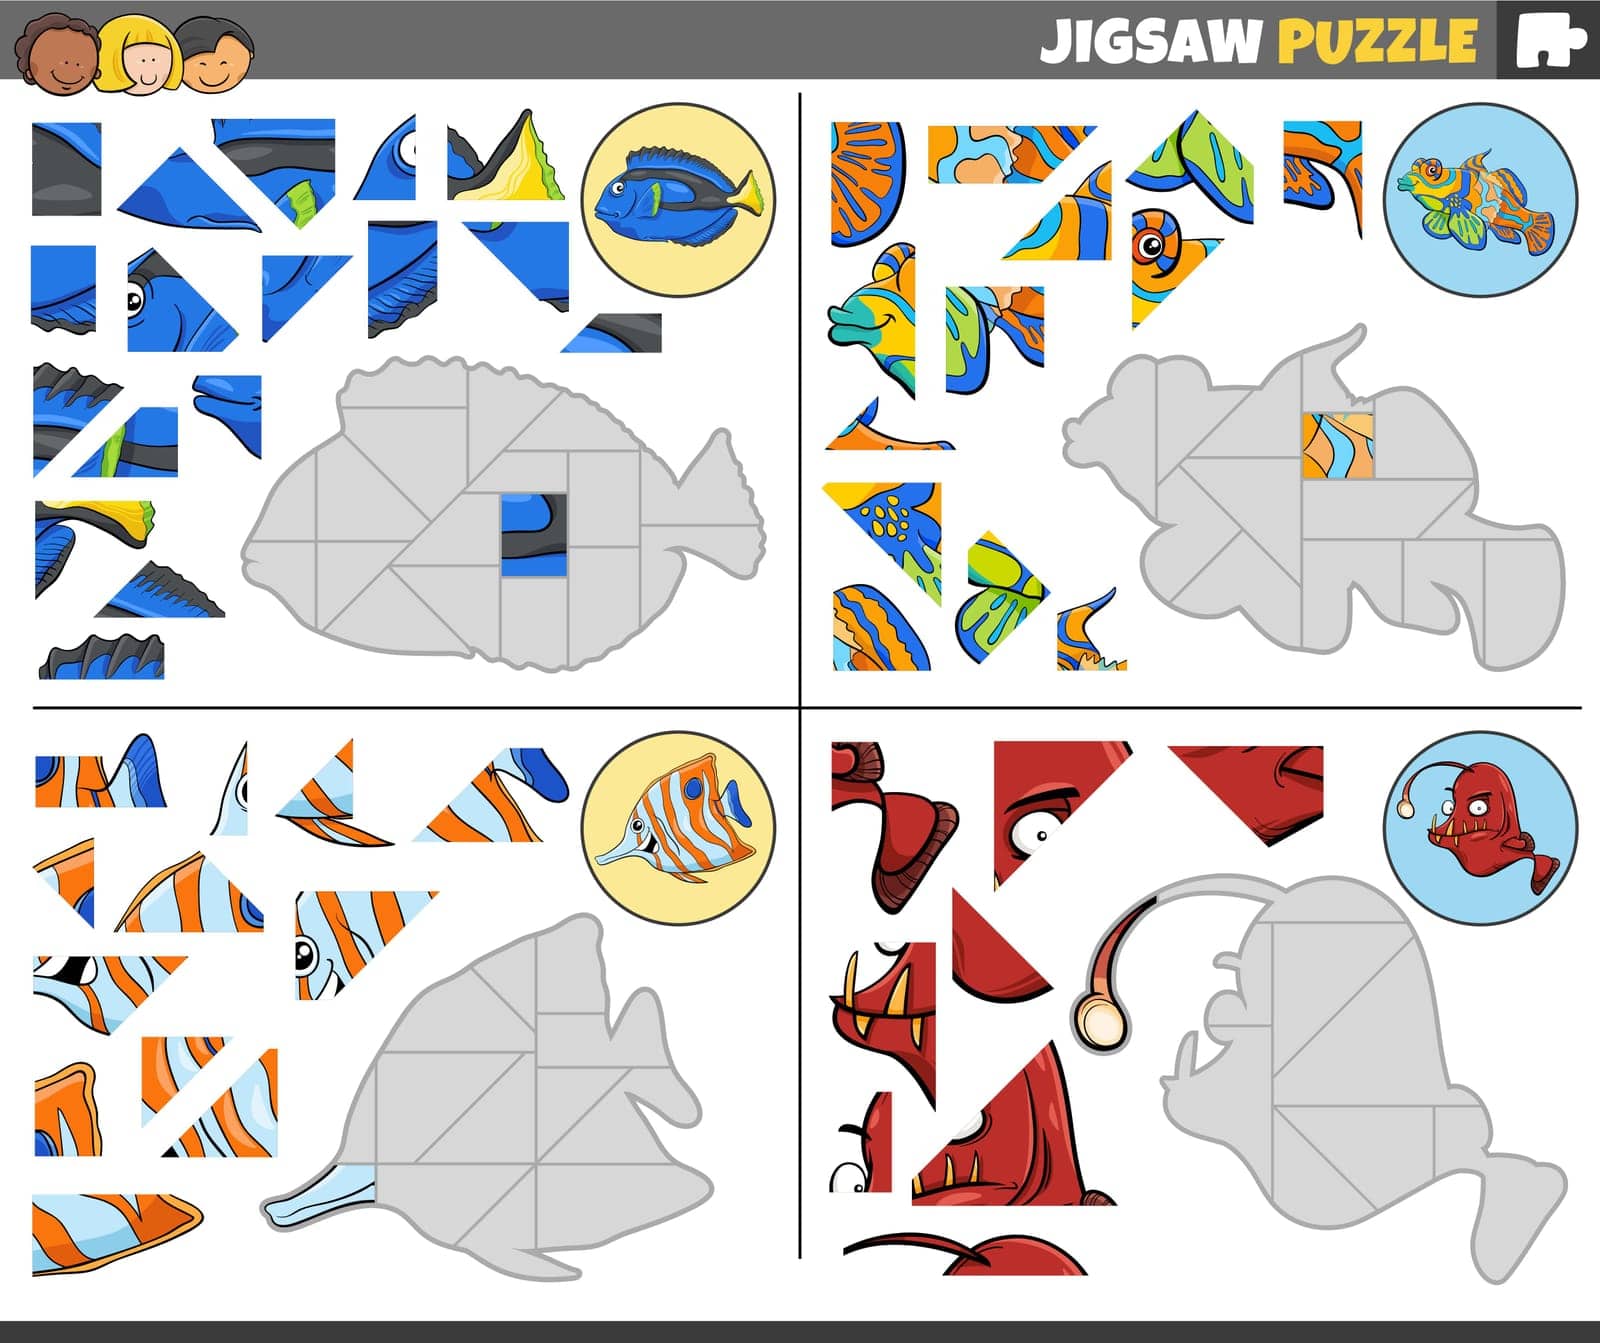 jigsaw puzzle games set with funny cartoon fish by izakowski